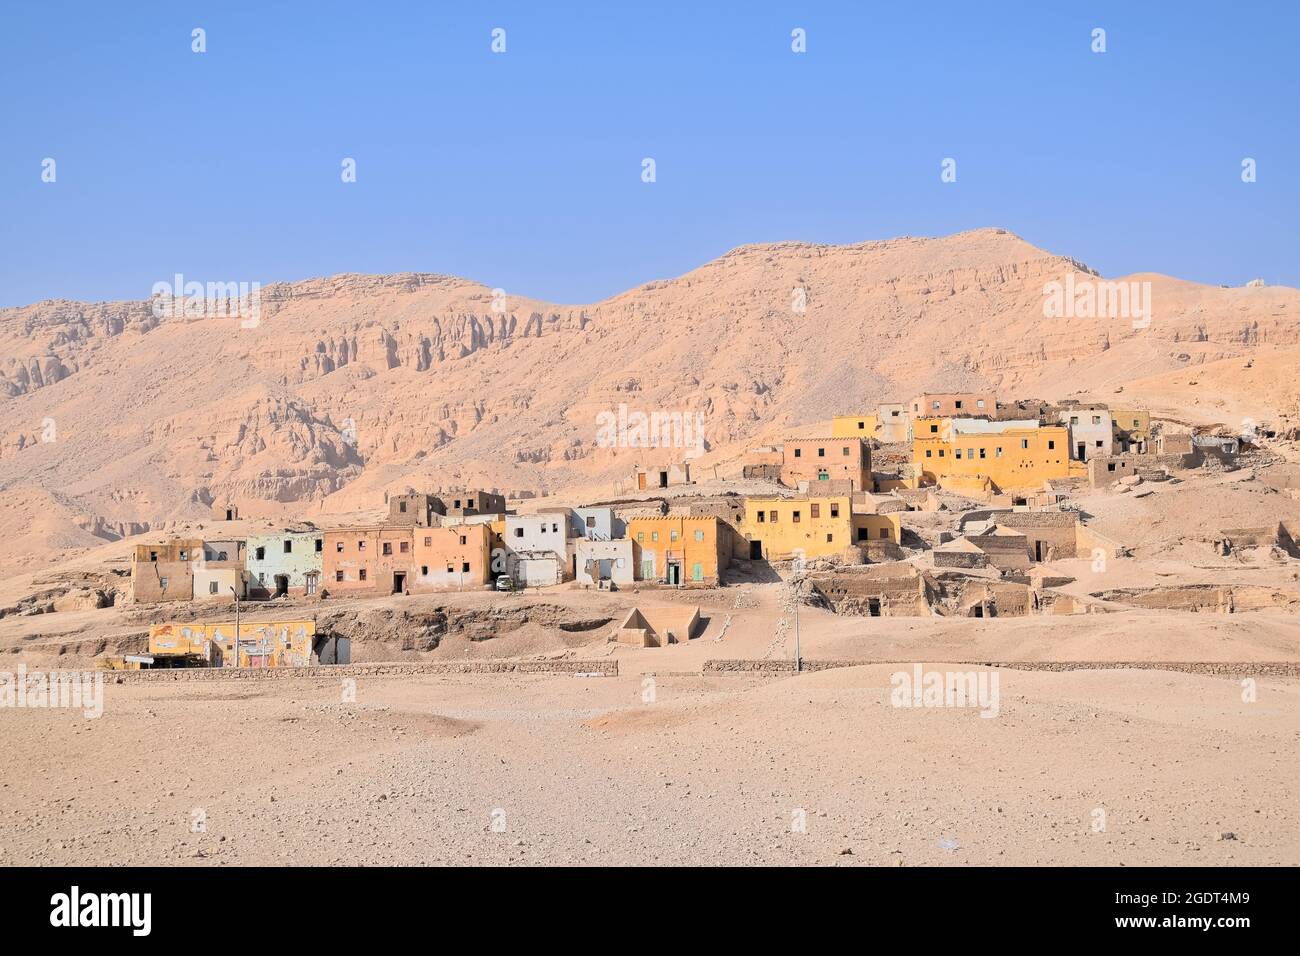 Promulgato antico villaggio in Egitto Foto Stock